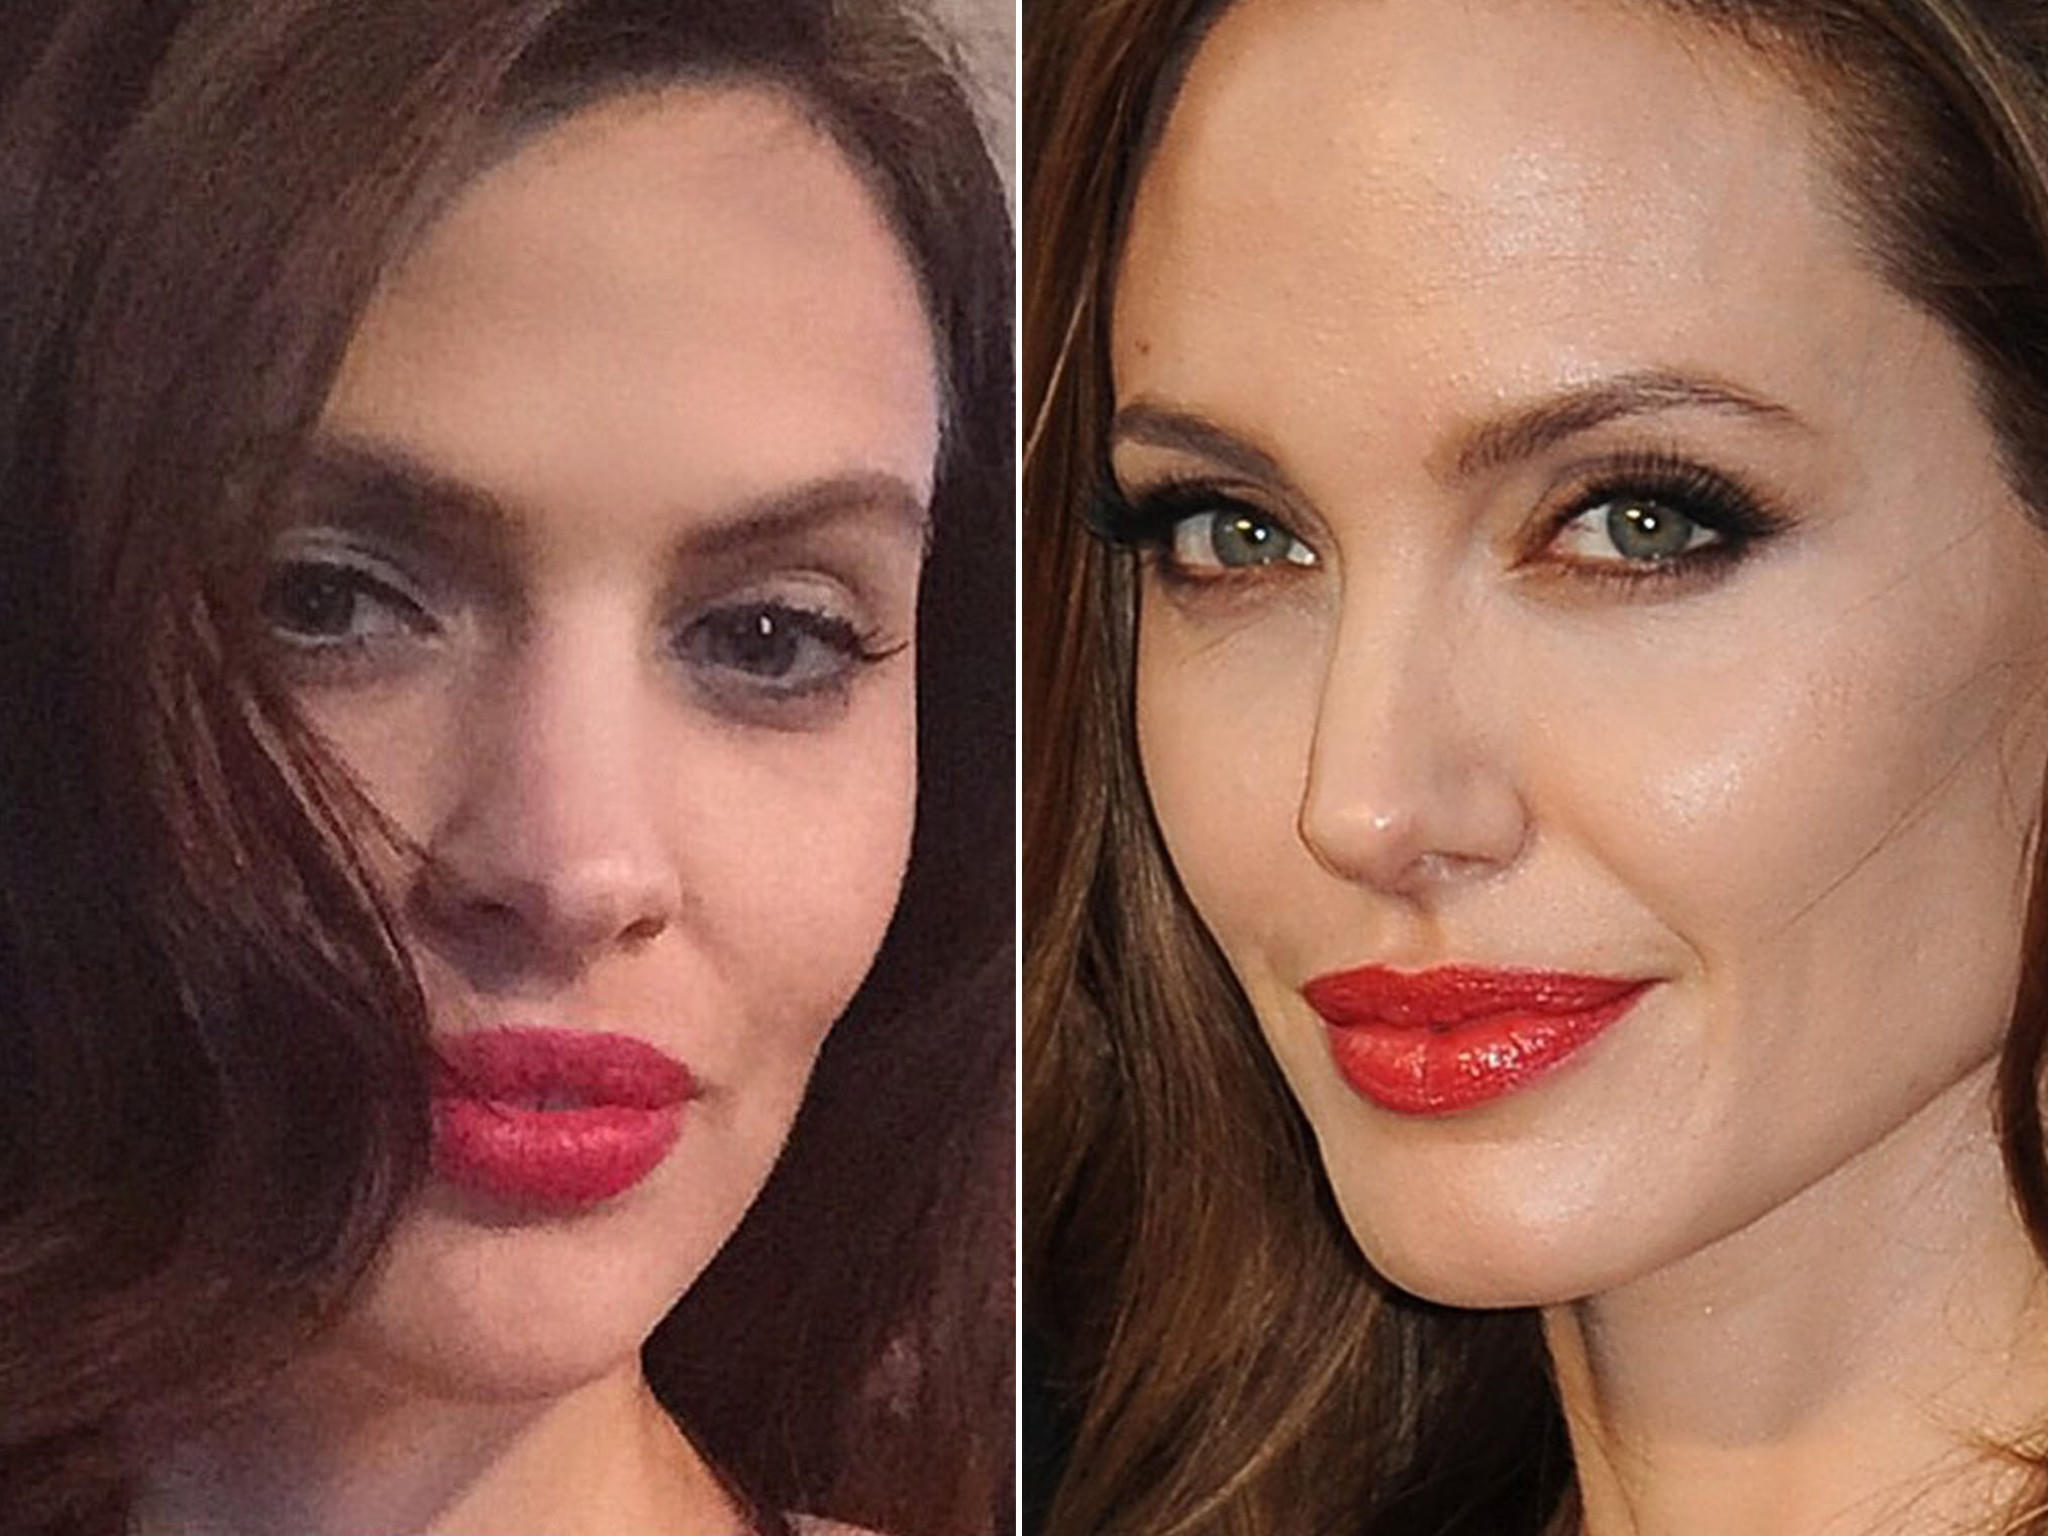 Gesichts-Zwillinge Doppelgänger gleich ähnlichkeit aussehen  